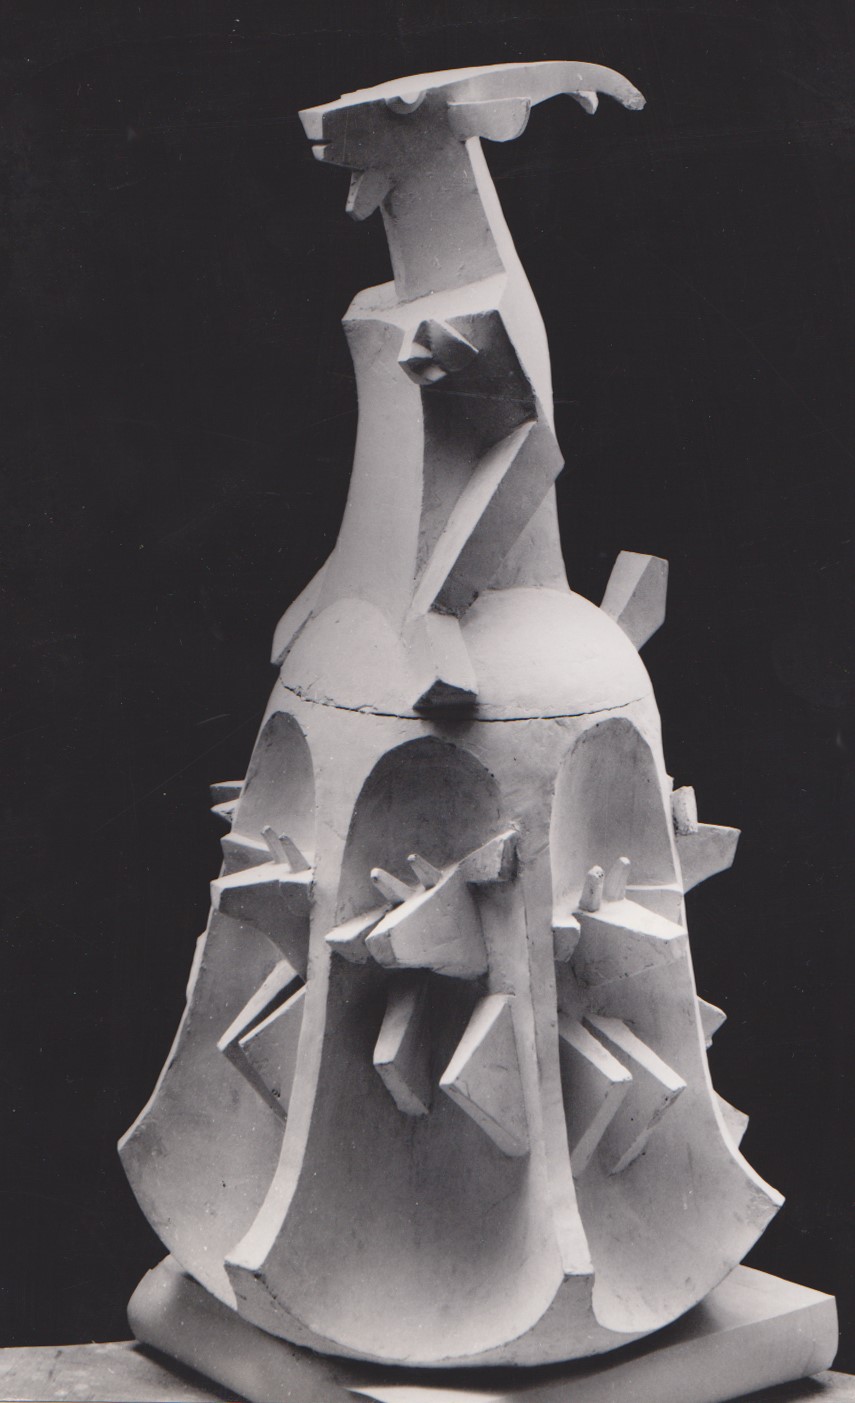 Владимир Соколов. "Коза", 1991. Белый бетон. Фото из архива Владимира Соколова